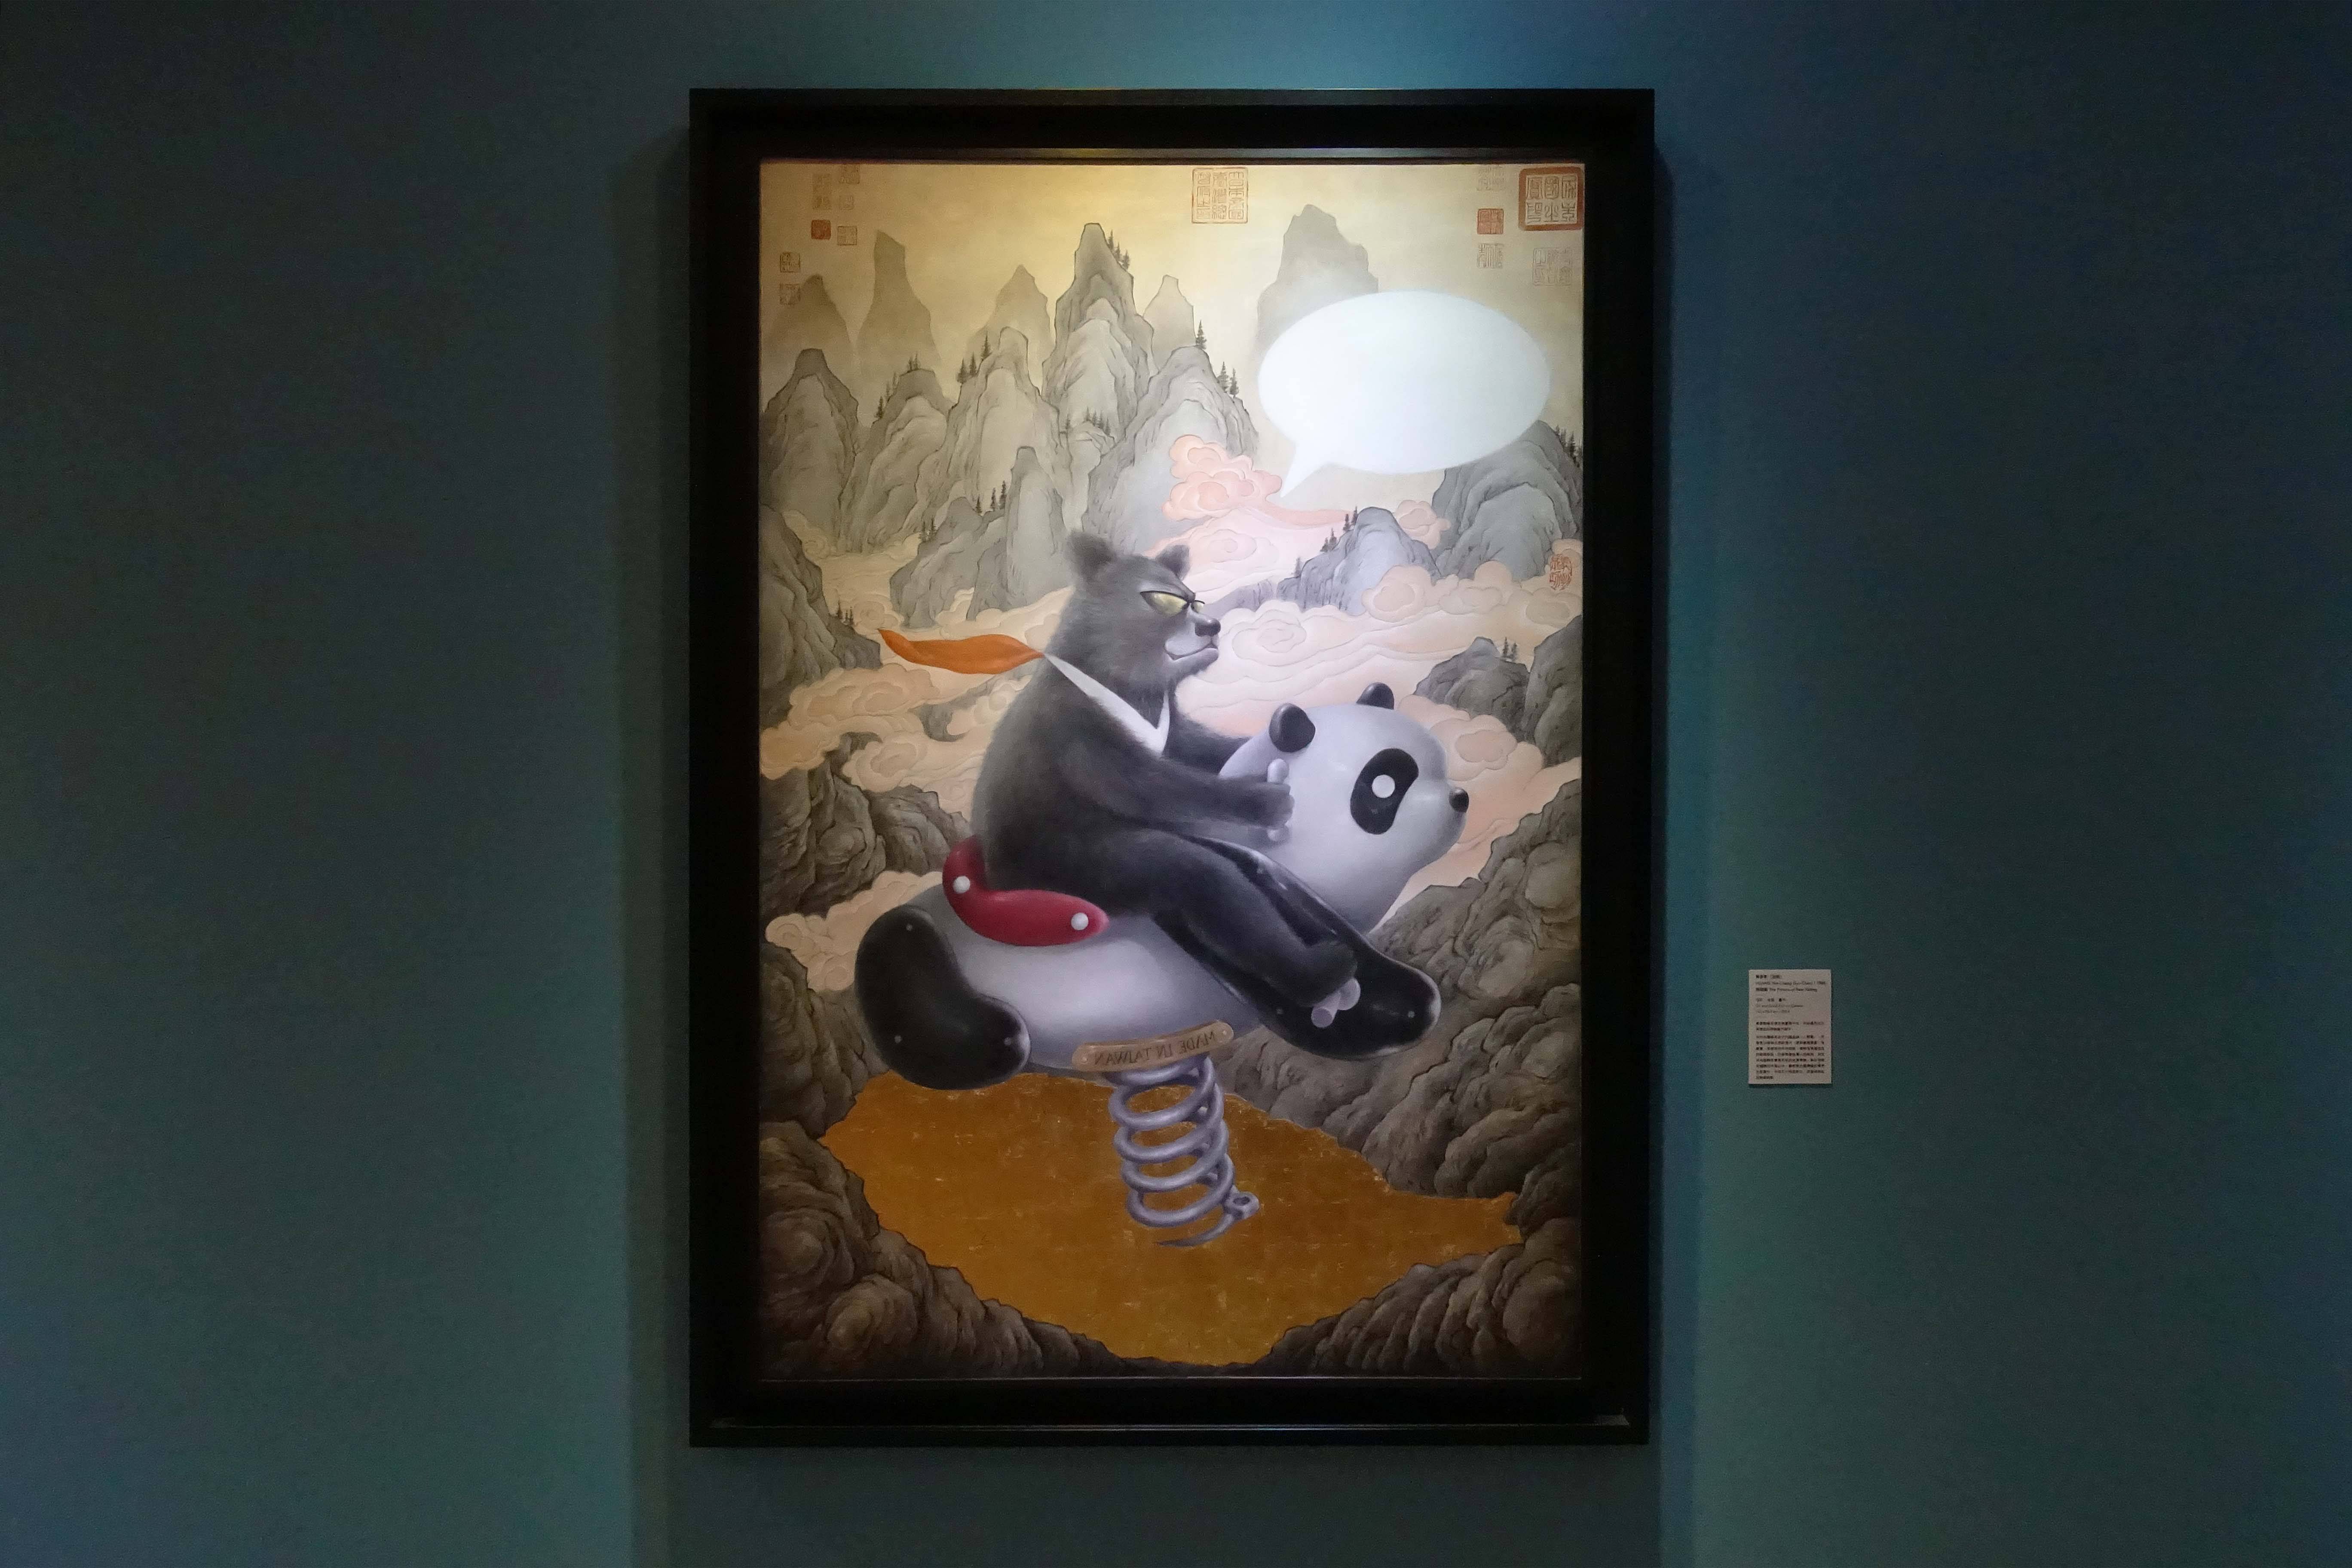 黃彥彰(旭辰)，《熊騎圖》，油彩、金箔、畫布，2014。